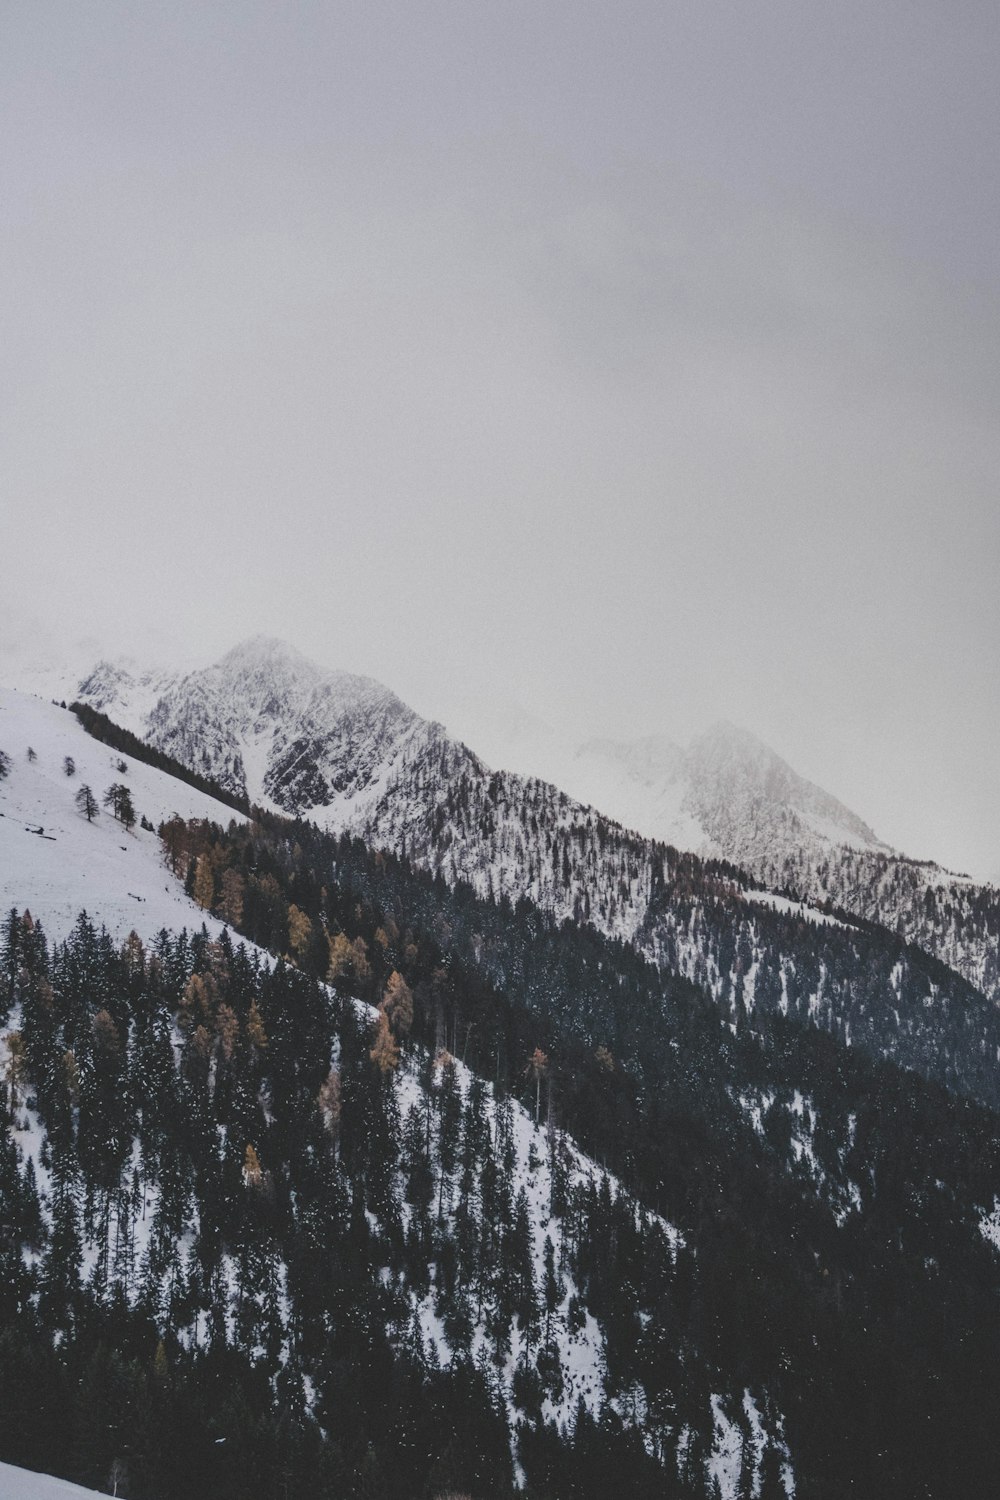 montaña cubierta de nieve y árboles